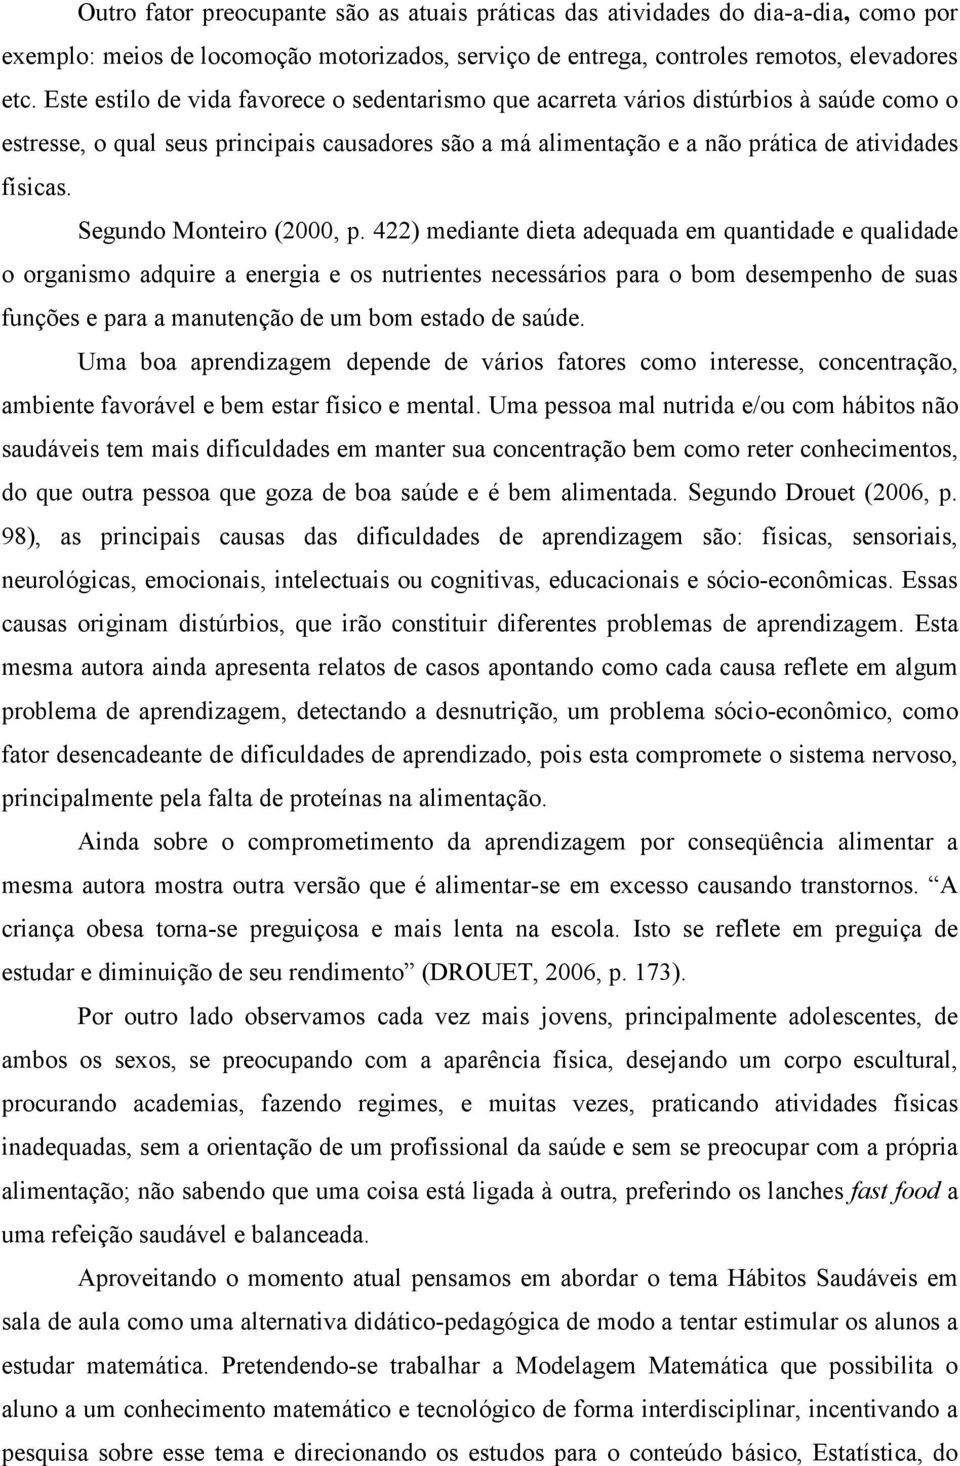 Segundo Monteiro (2000, p.